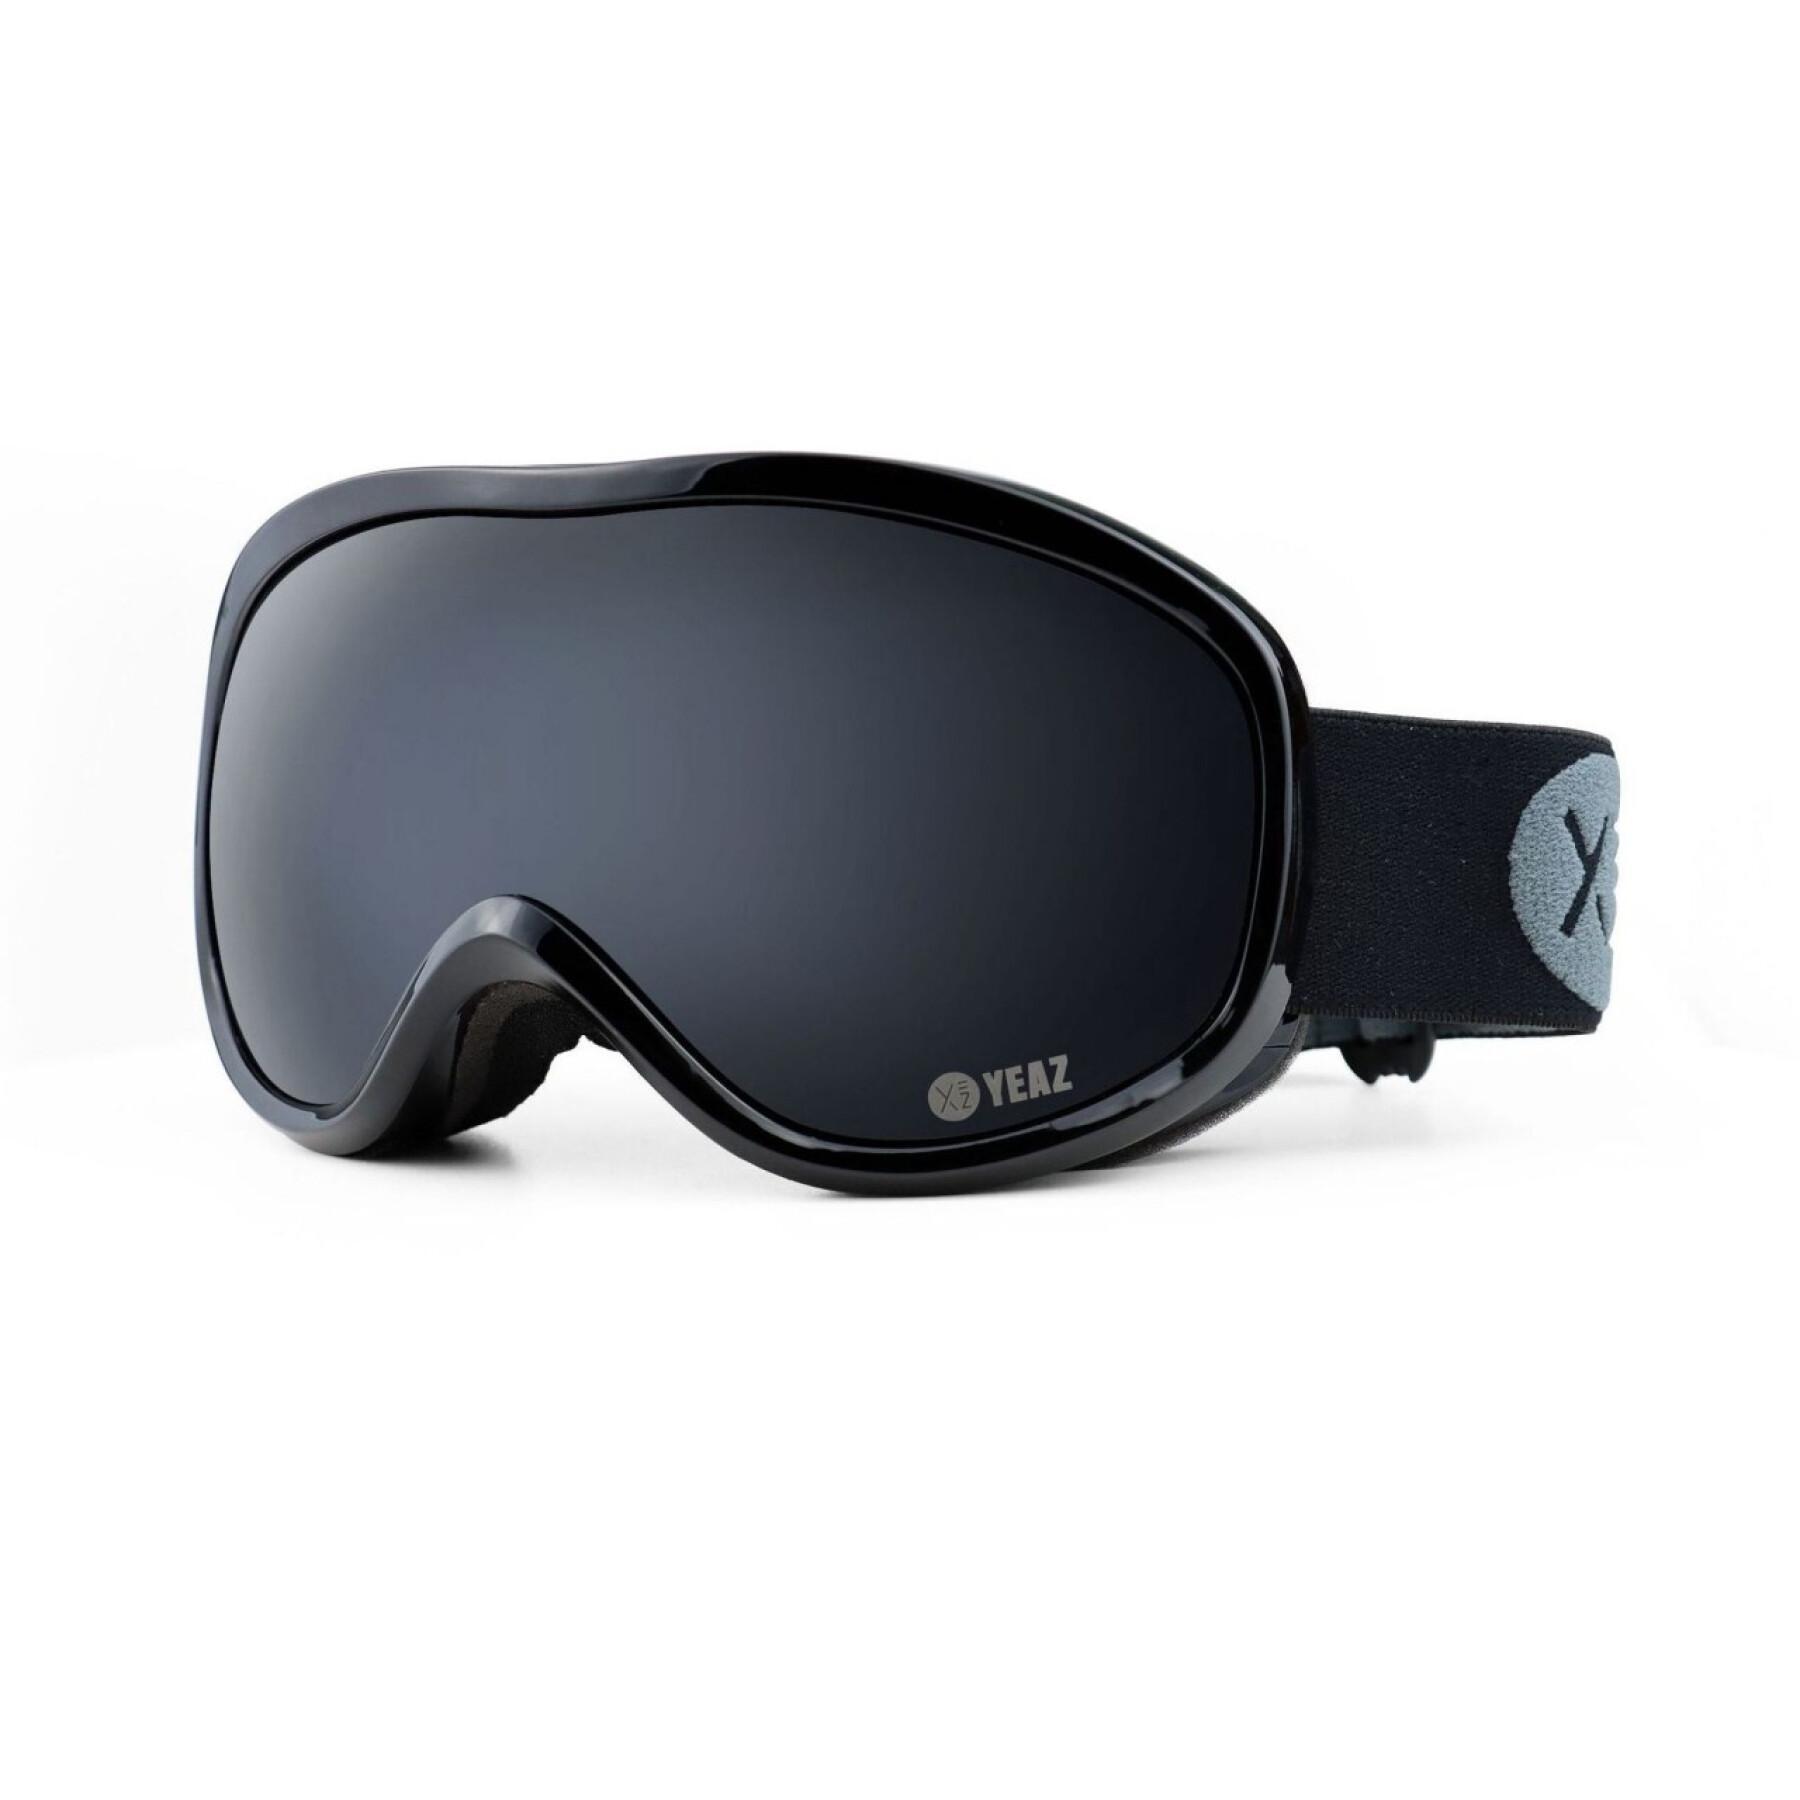 Ski and snowboard goggles Yeaz Steeze